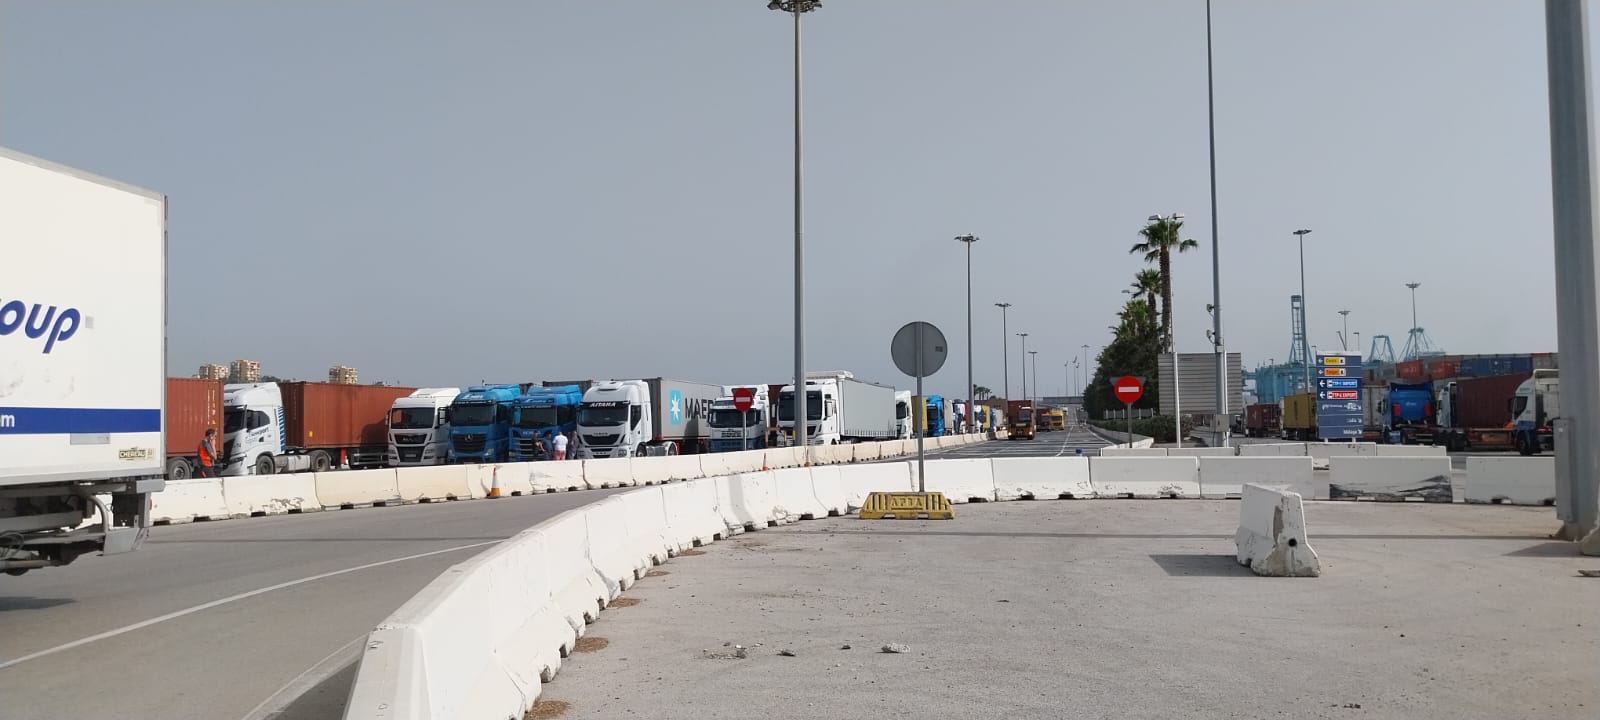 CCOO denuncia la situación de los camioneros en los accesos a APM